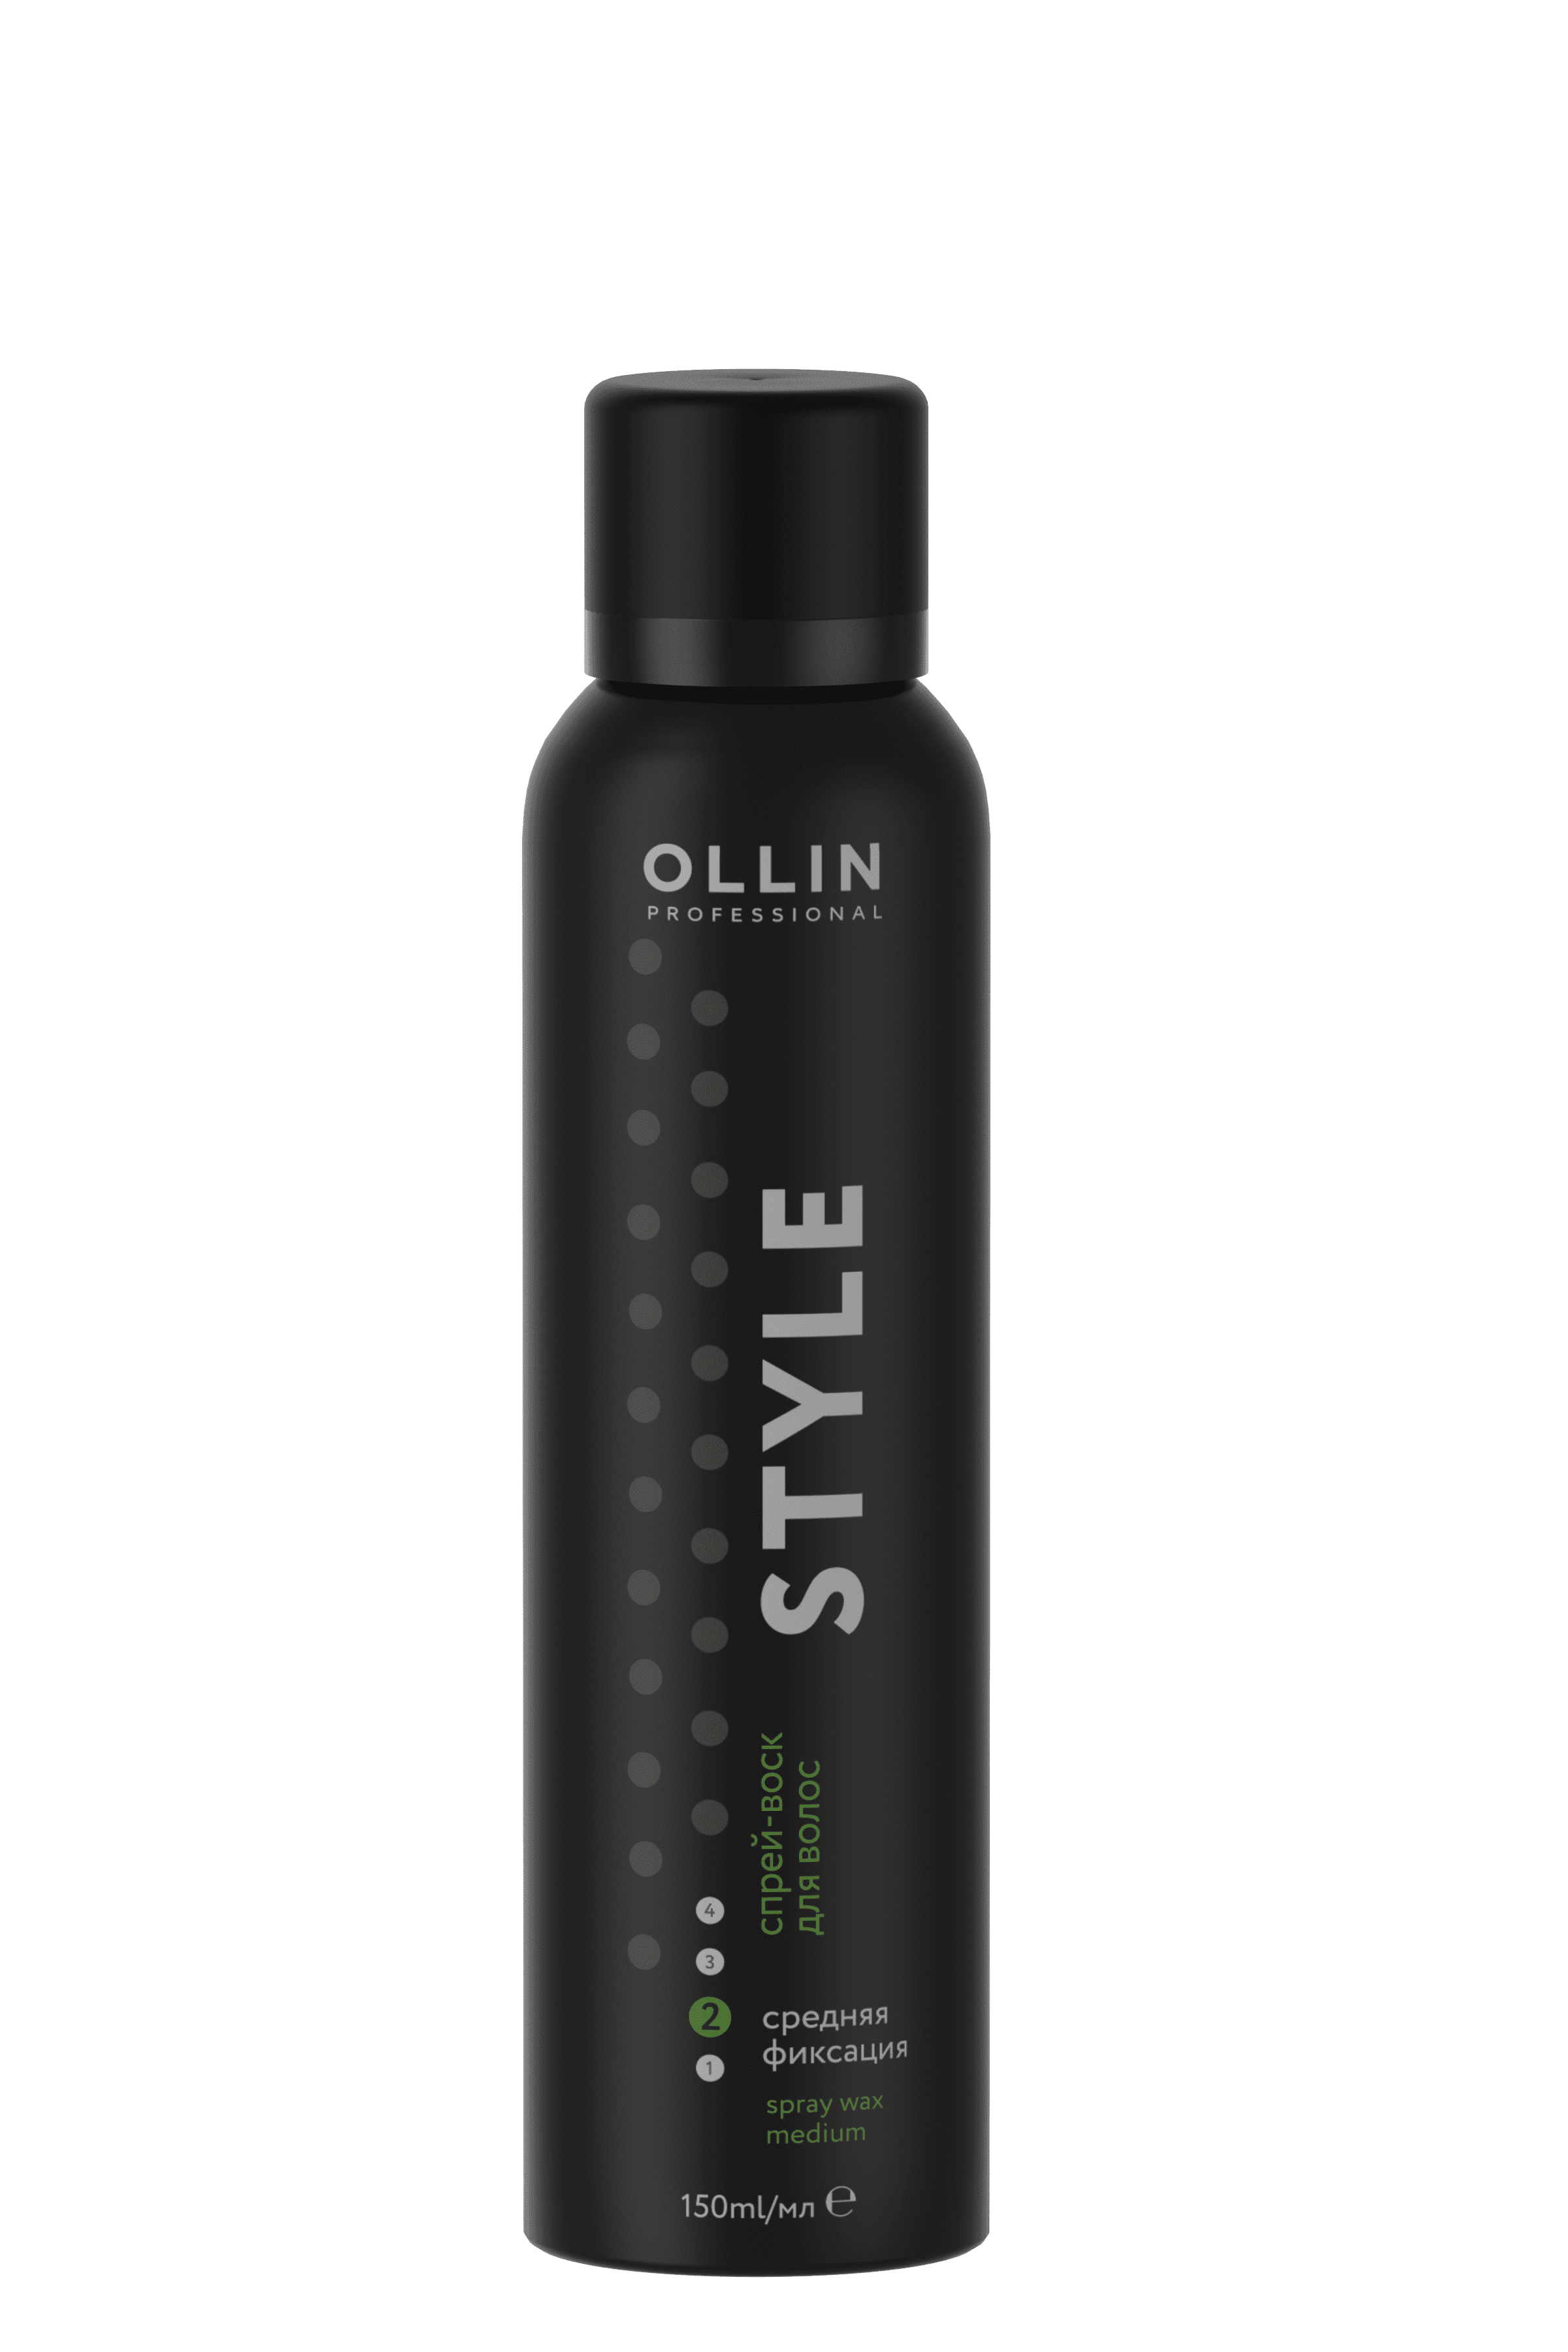 Ollin Professional Спрей-воск для волос средней фиксации, 150 мл (Ollin Professional, ) - фото №7